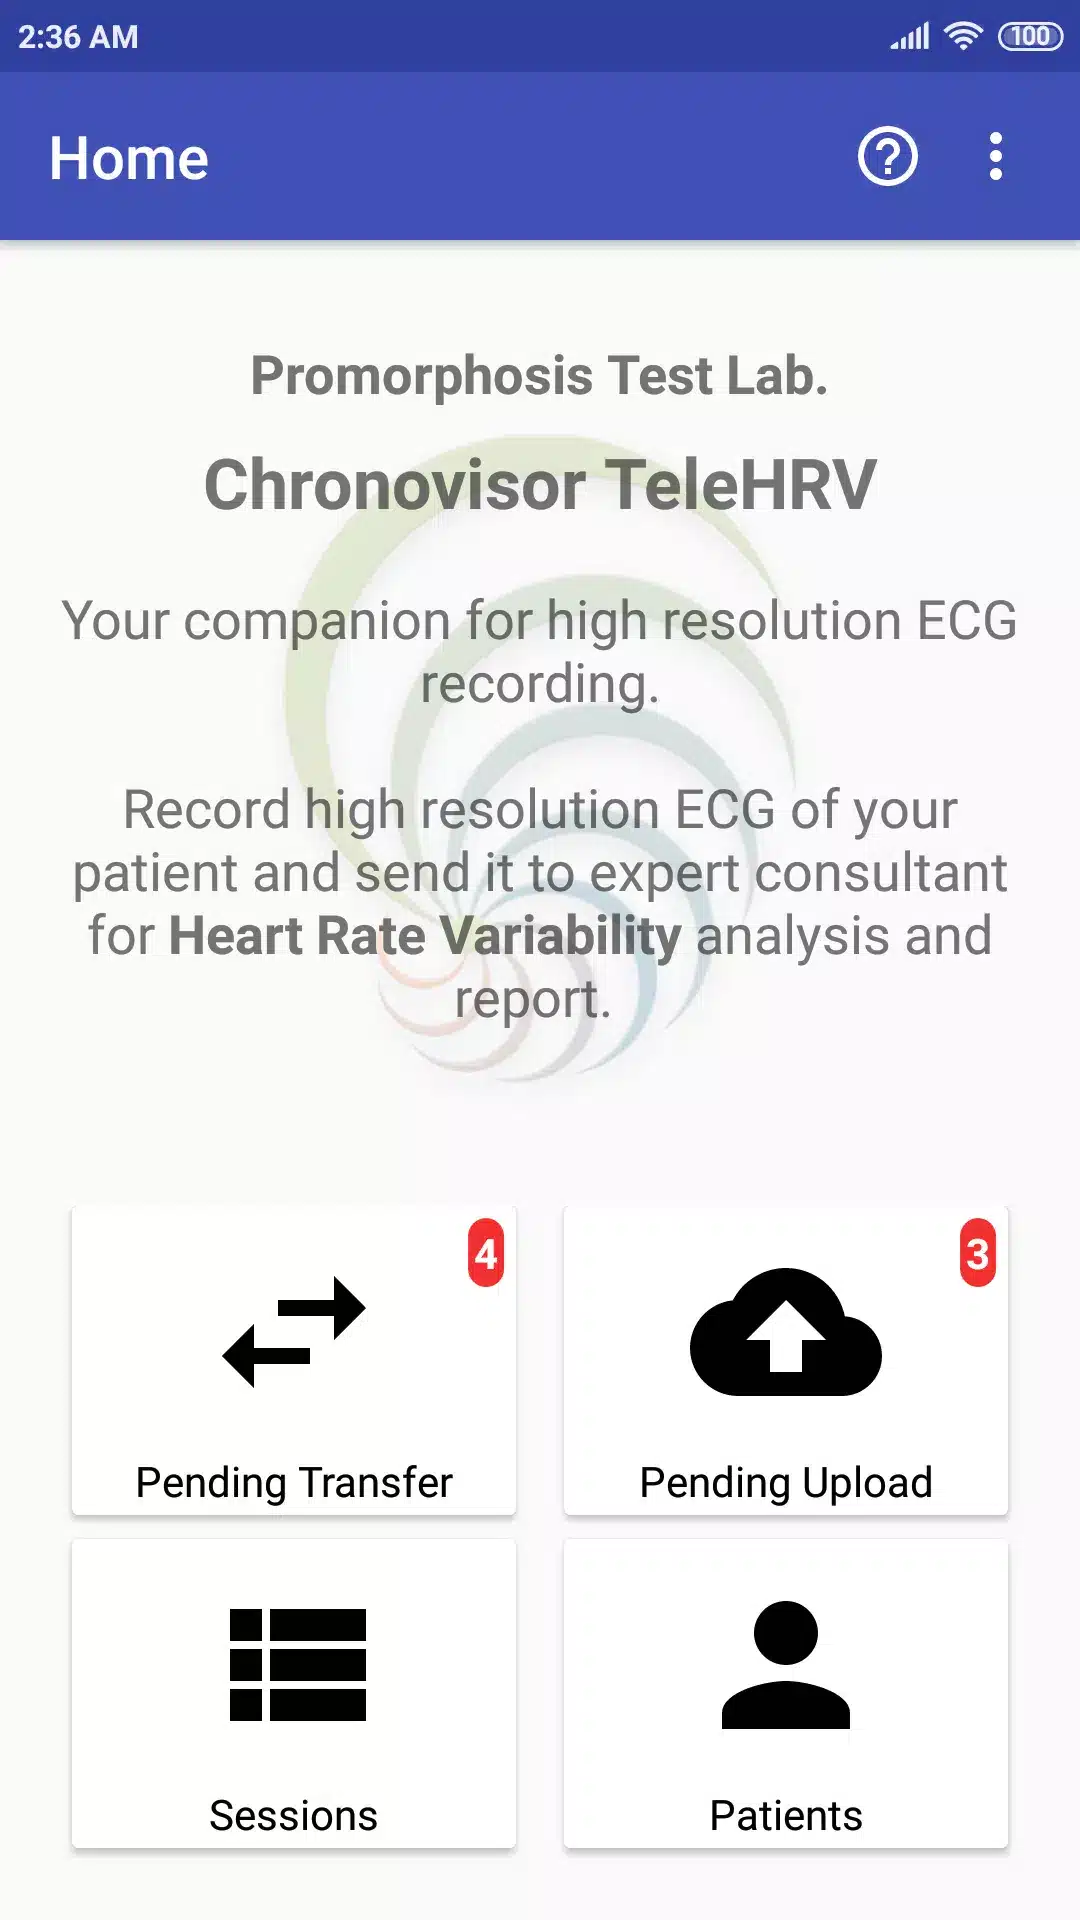 Chronovisor TeleHRV 2.0 Image 1